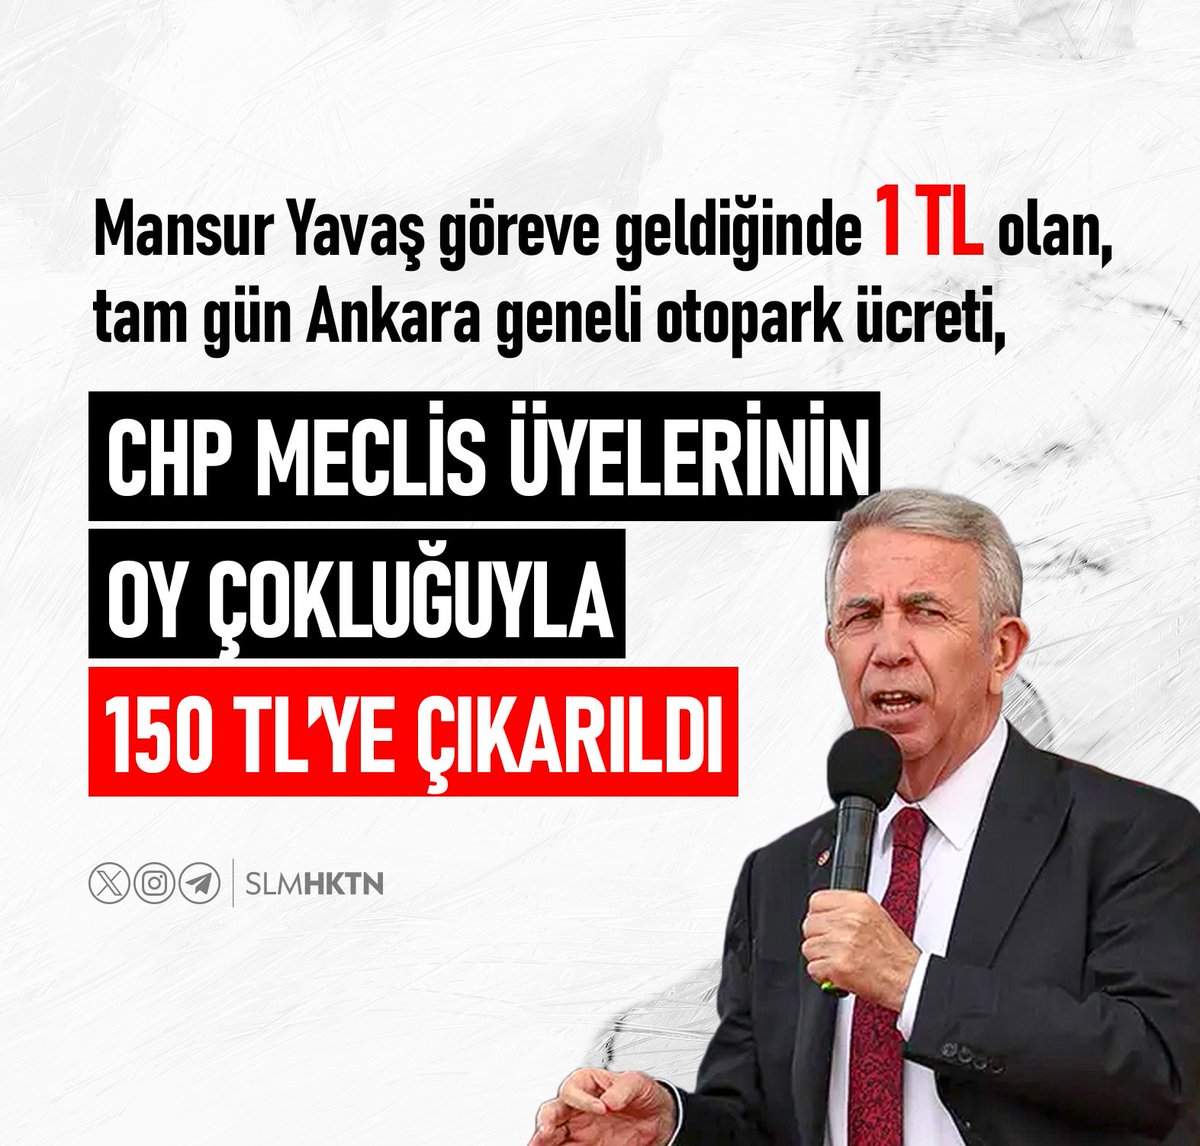 Mansur Yavaş göreve geldiğinde 1 TL olan, tam gün Ankara geneli otopark ücreti, CHP meclis üyelerinin OY ÇOKLUĞUYLA 150 TL’ye çıkarıldı.